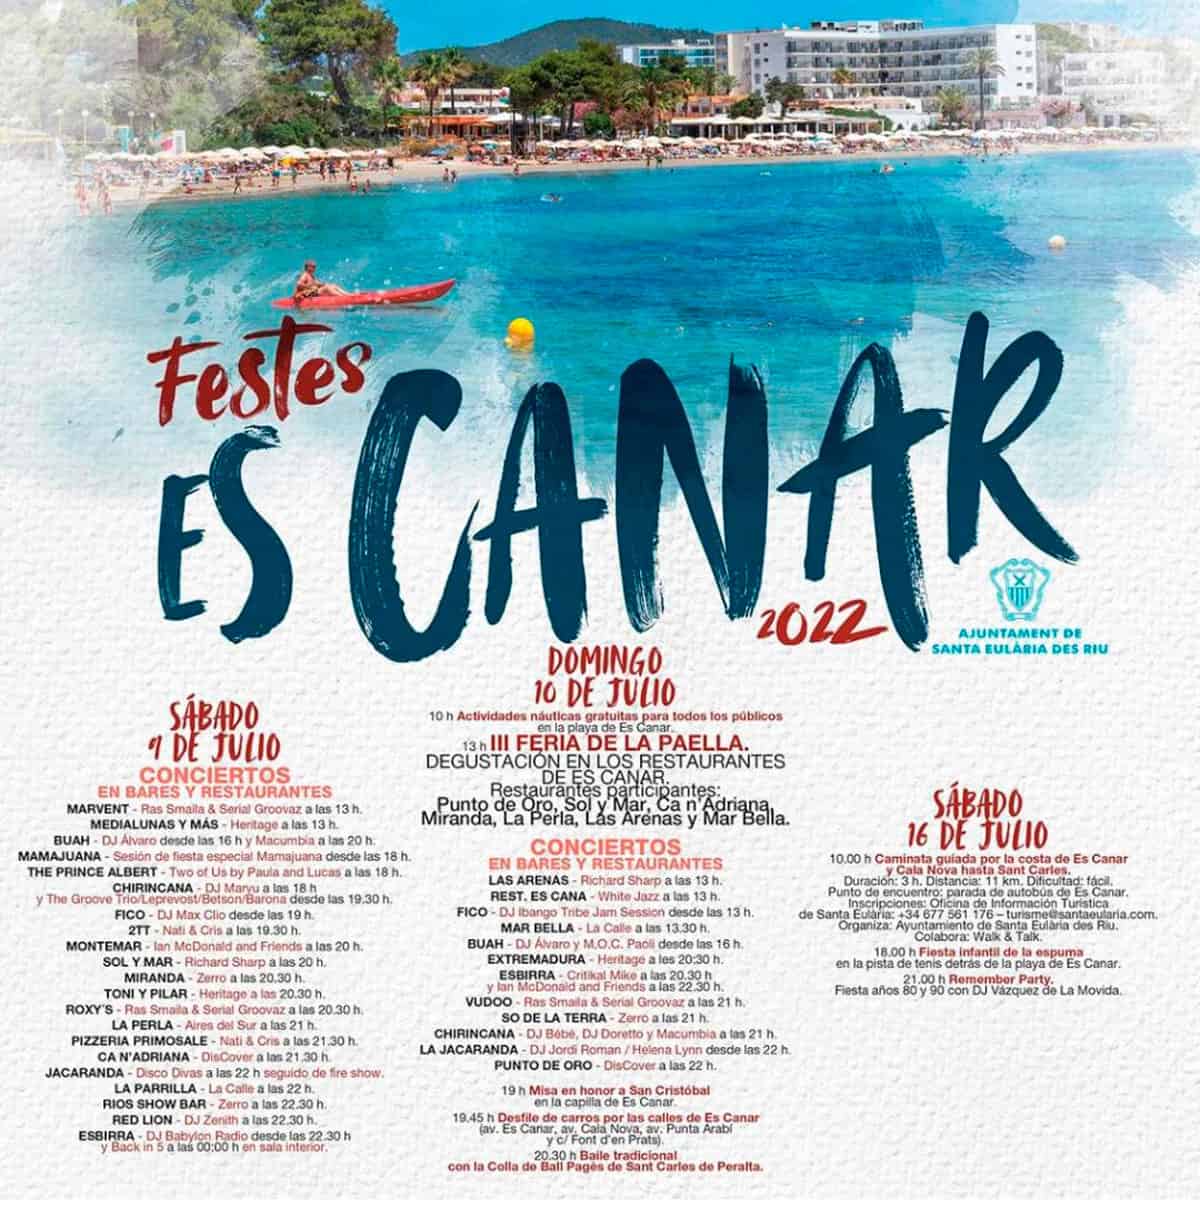 festes-de-és-canar-Eivissa-2022-welcometoibiza